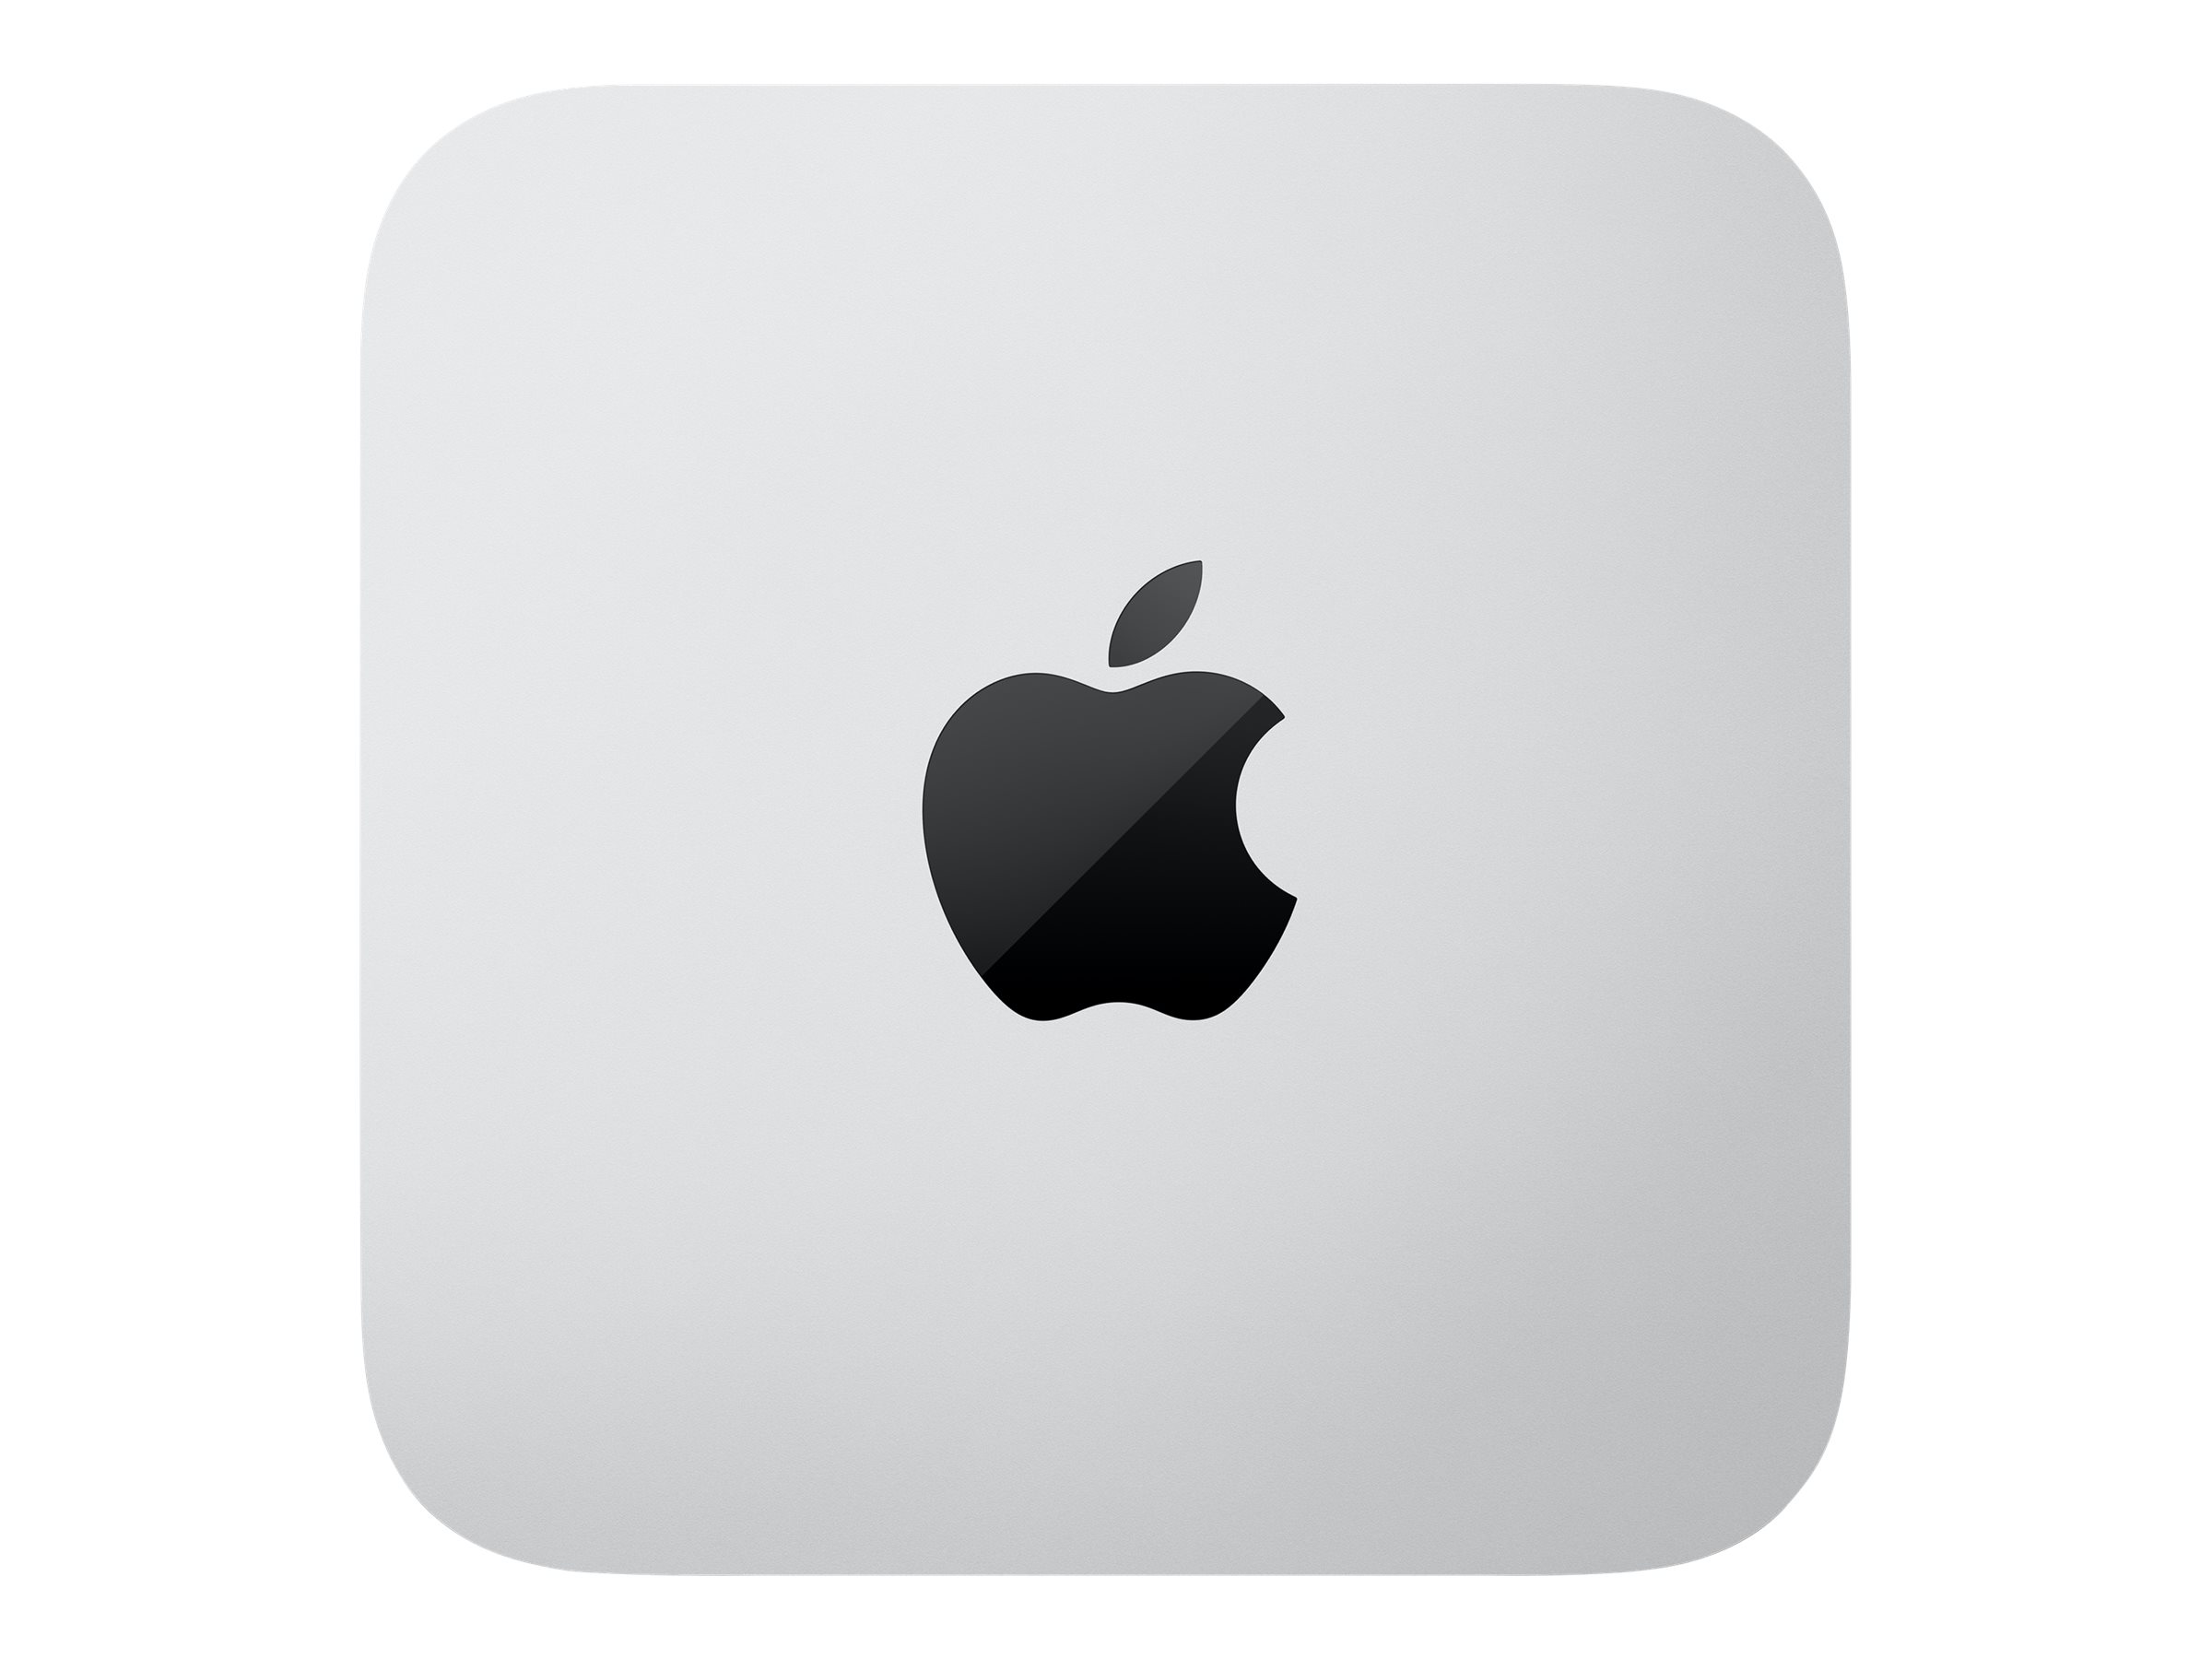 Apple Mac Studio - USFF - M1 Ultra - RAM 128 GB